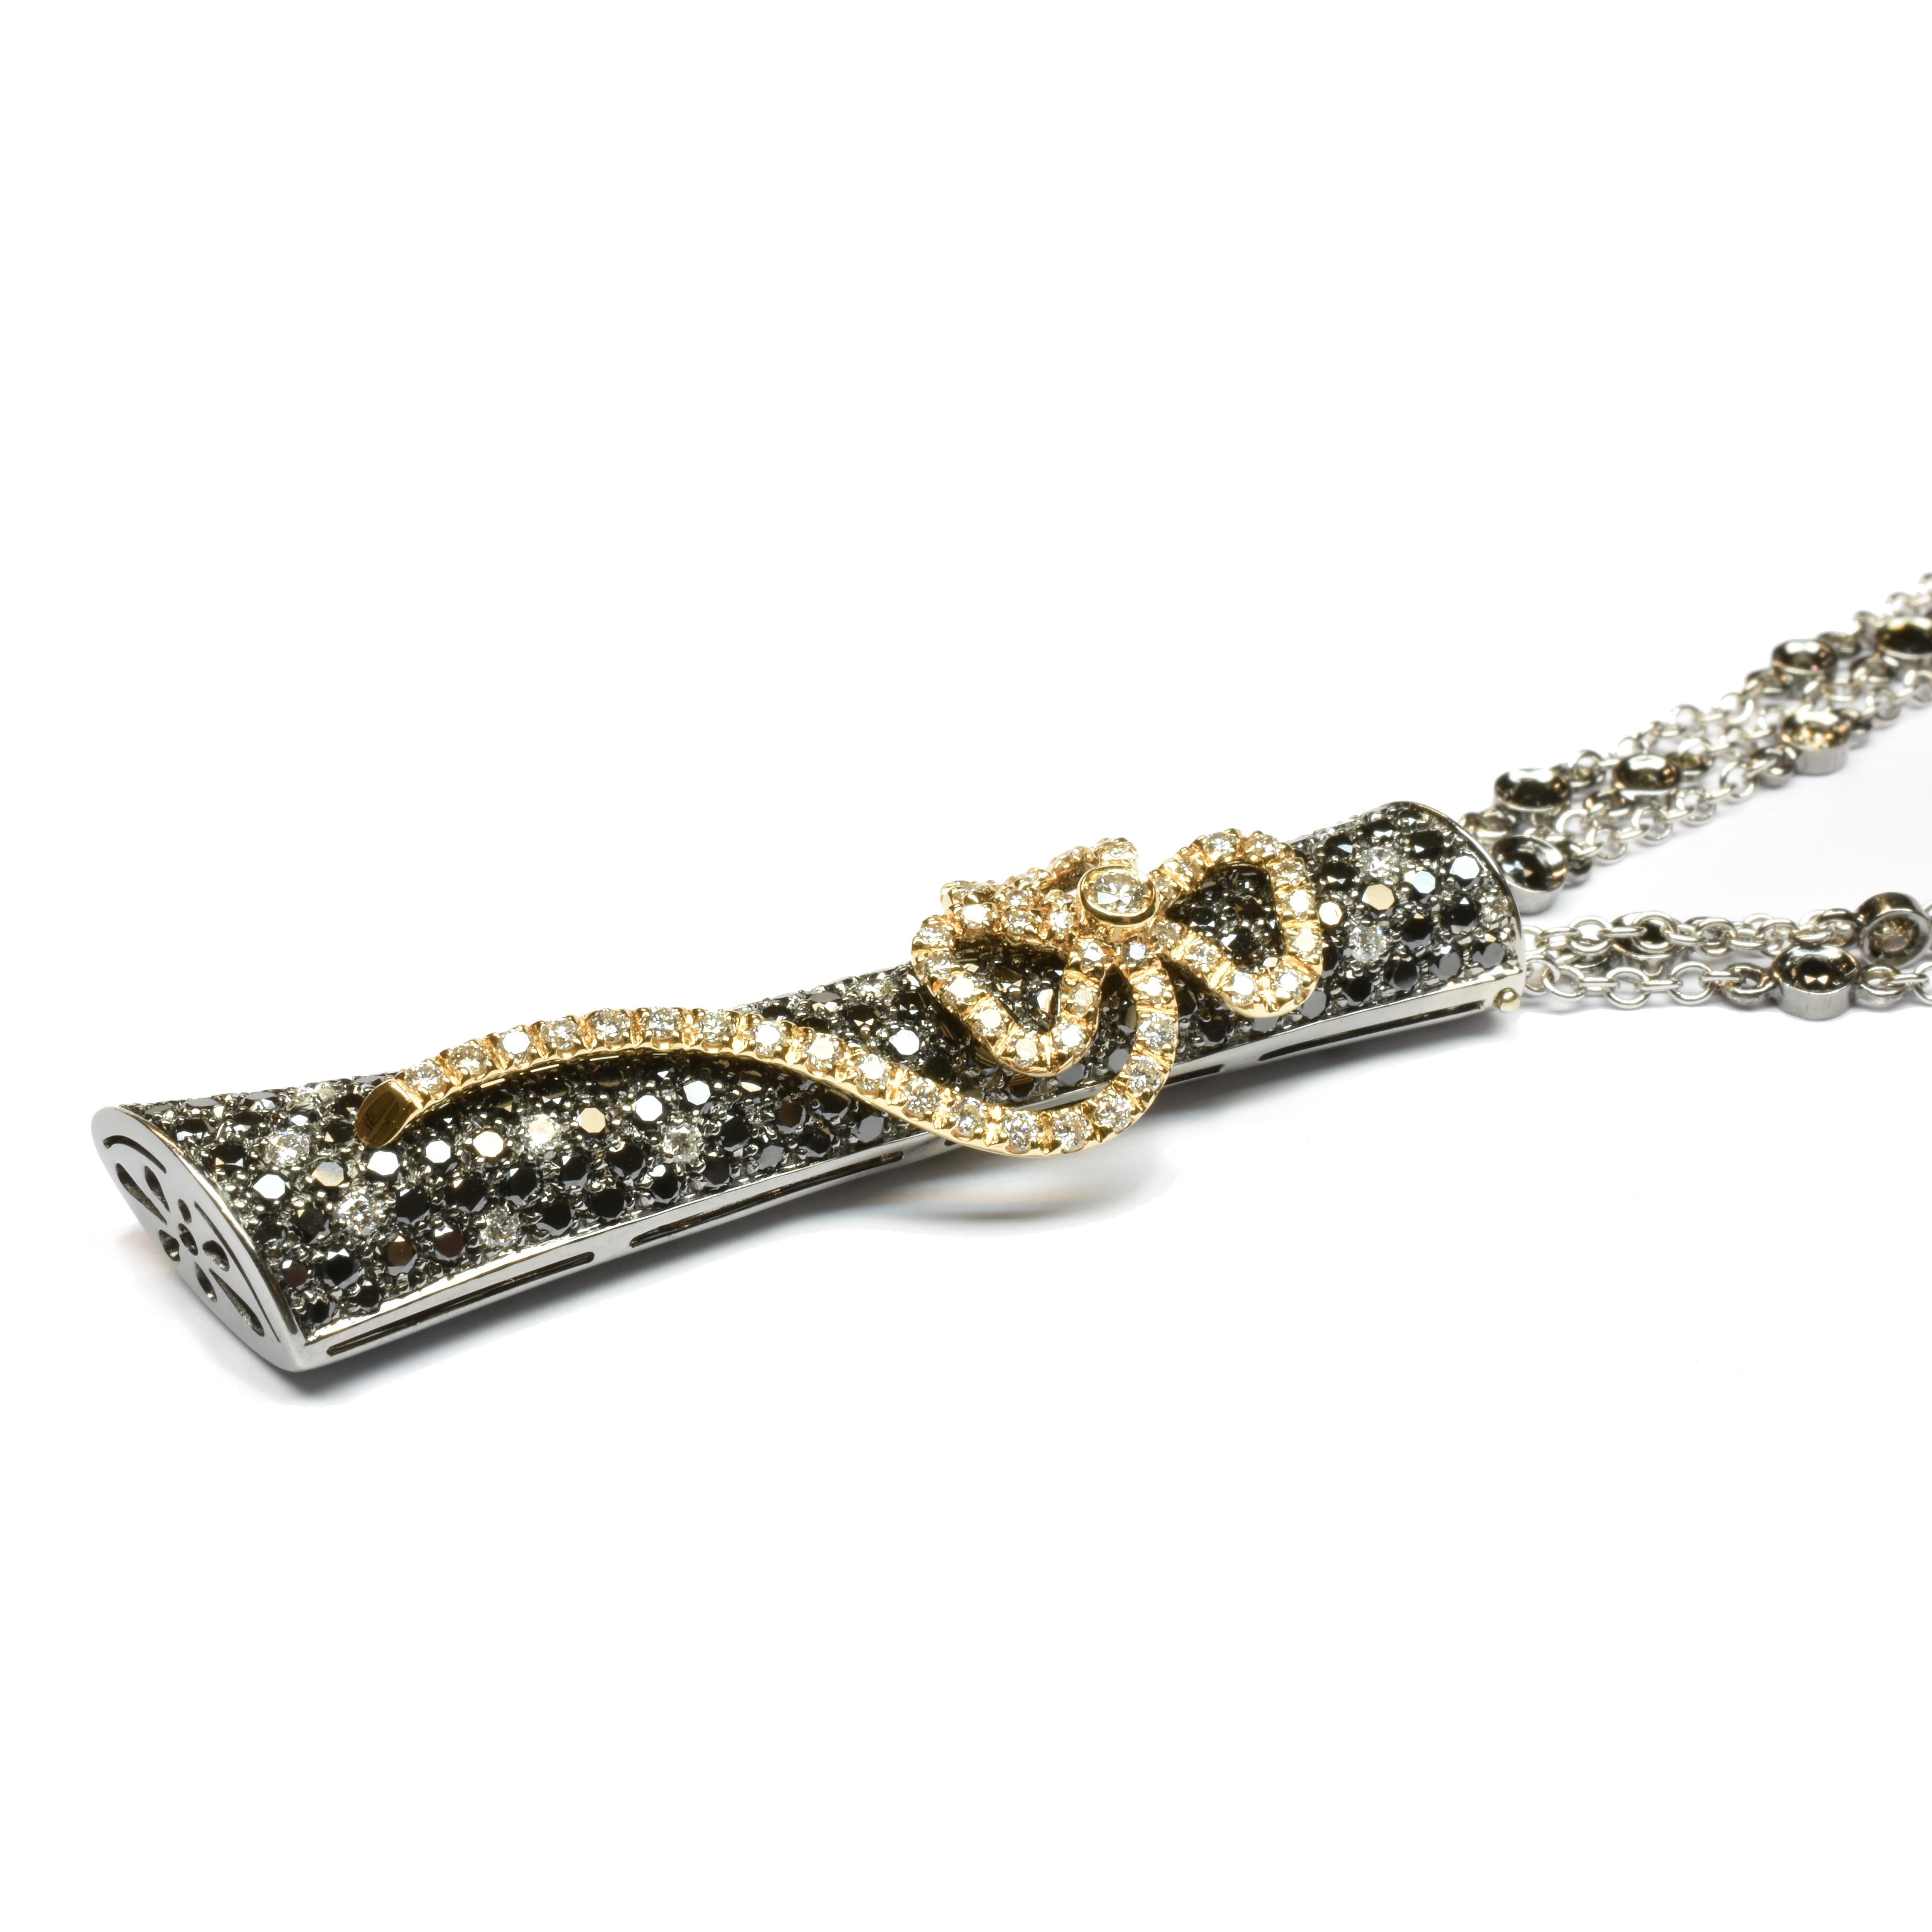 Gilberto Cassola Halskette aus schwarzem Rhodium 18Kt Gold mit schwarzen und weißen Diamanten mit einer Blume aus 18Kt Roségold mit weißen Diamanten.
Einzigartiges Stück. Handgefertigt in unserem Atelier in Valenza (Italien). 
50 cm 18Kt Weißgold